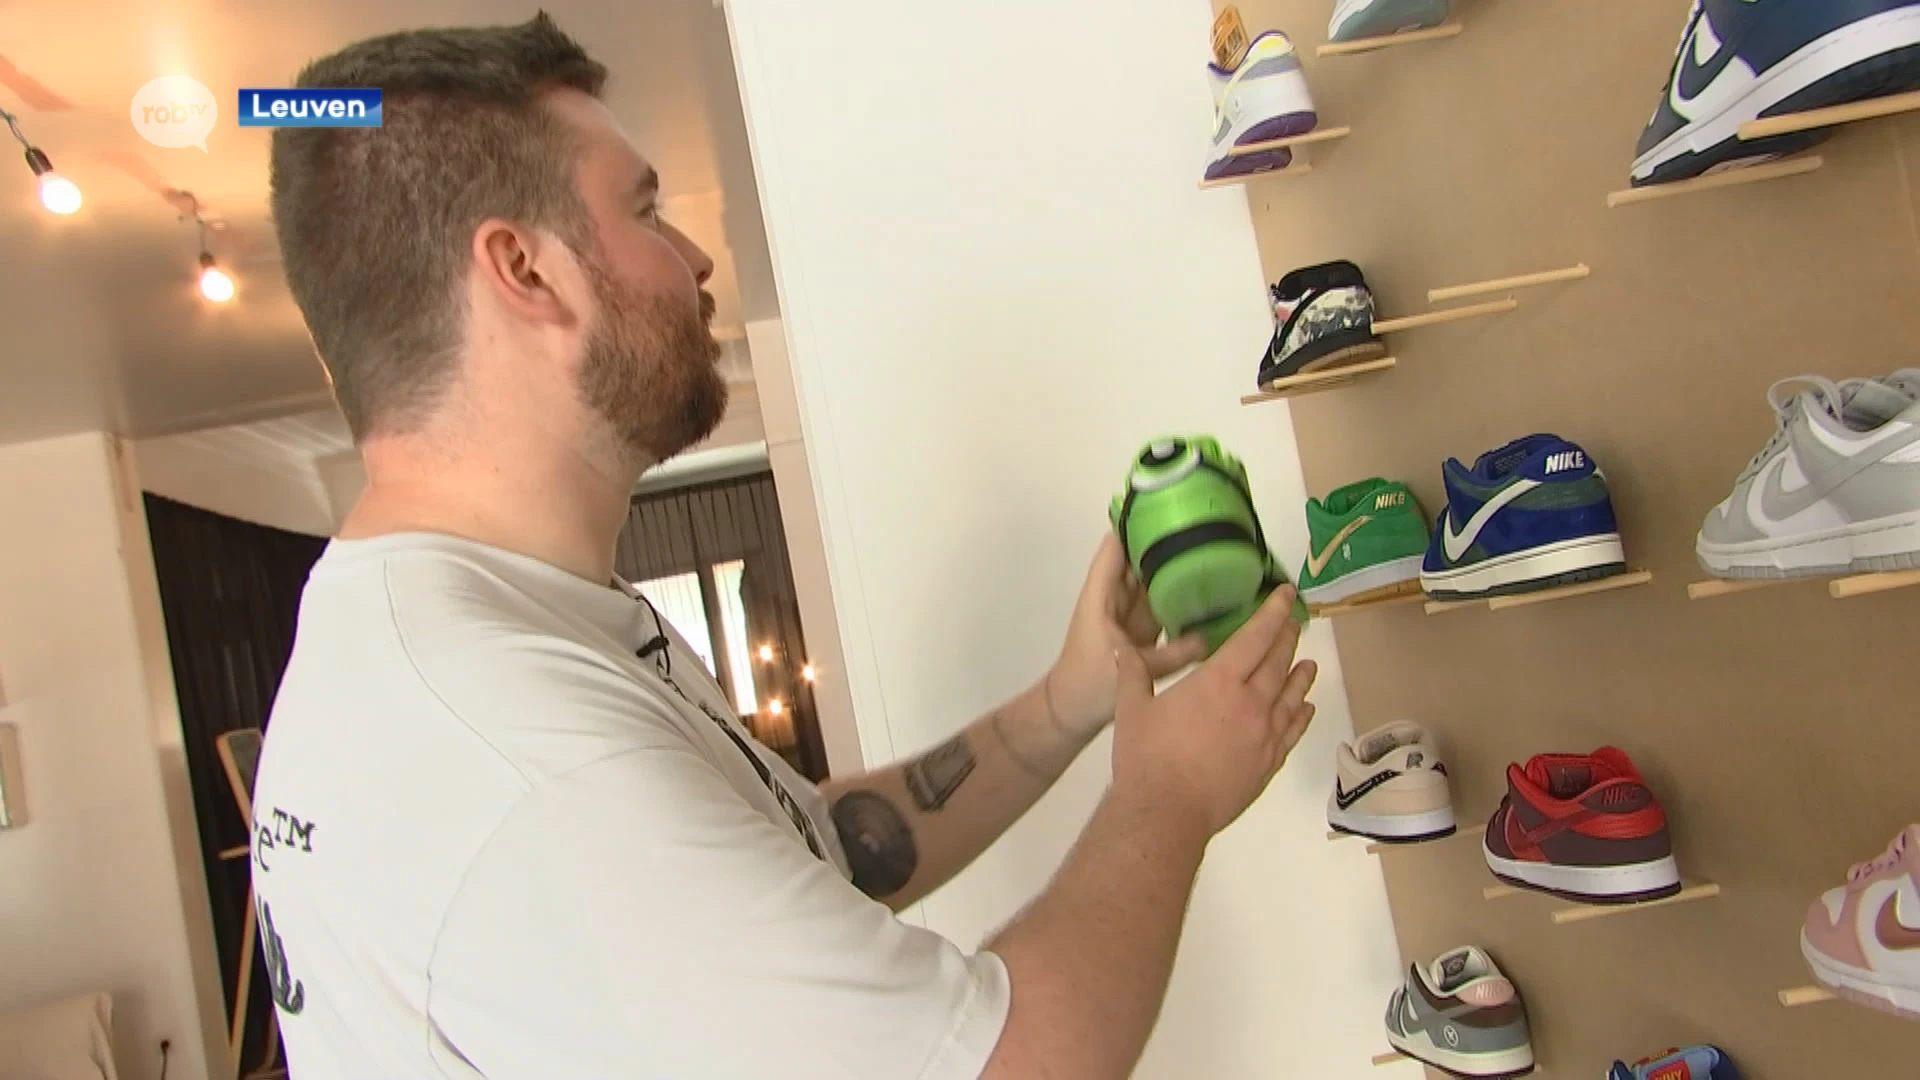 Bram Berghmans (25) opent pop-up store met exclusieve sneakers tot 2500 euro in Leuvense Bondgenotenlaan